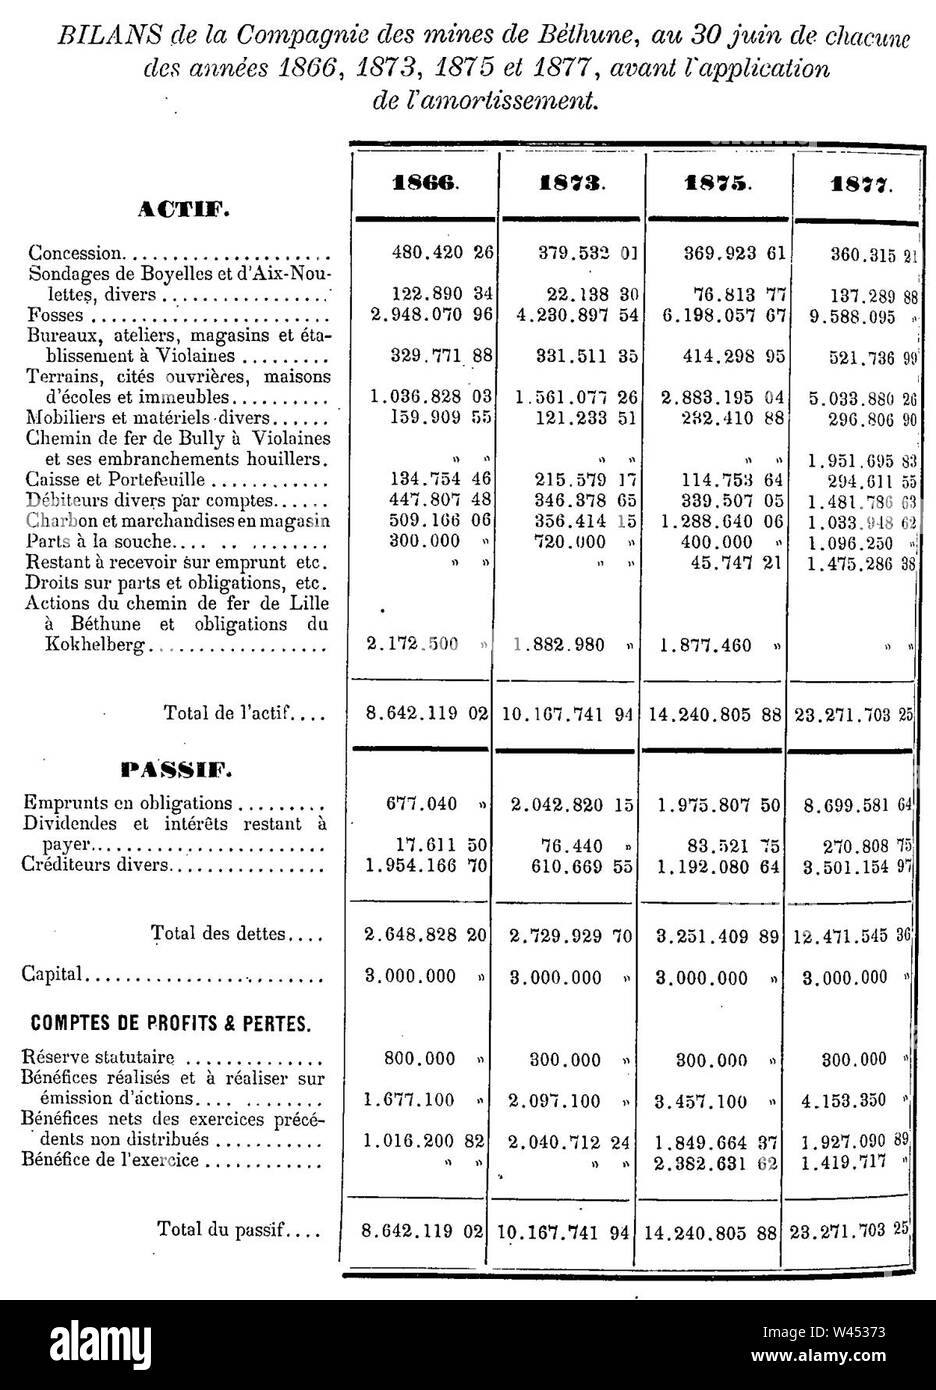 La compagnie des Mines de Béthune - Bilans au 30 juin des années 1866, 1873, 1875 et 1877. Foto Stock